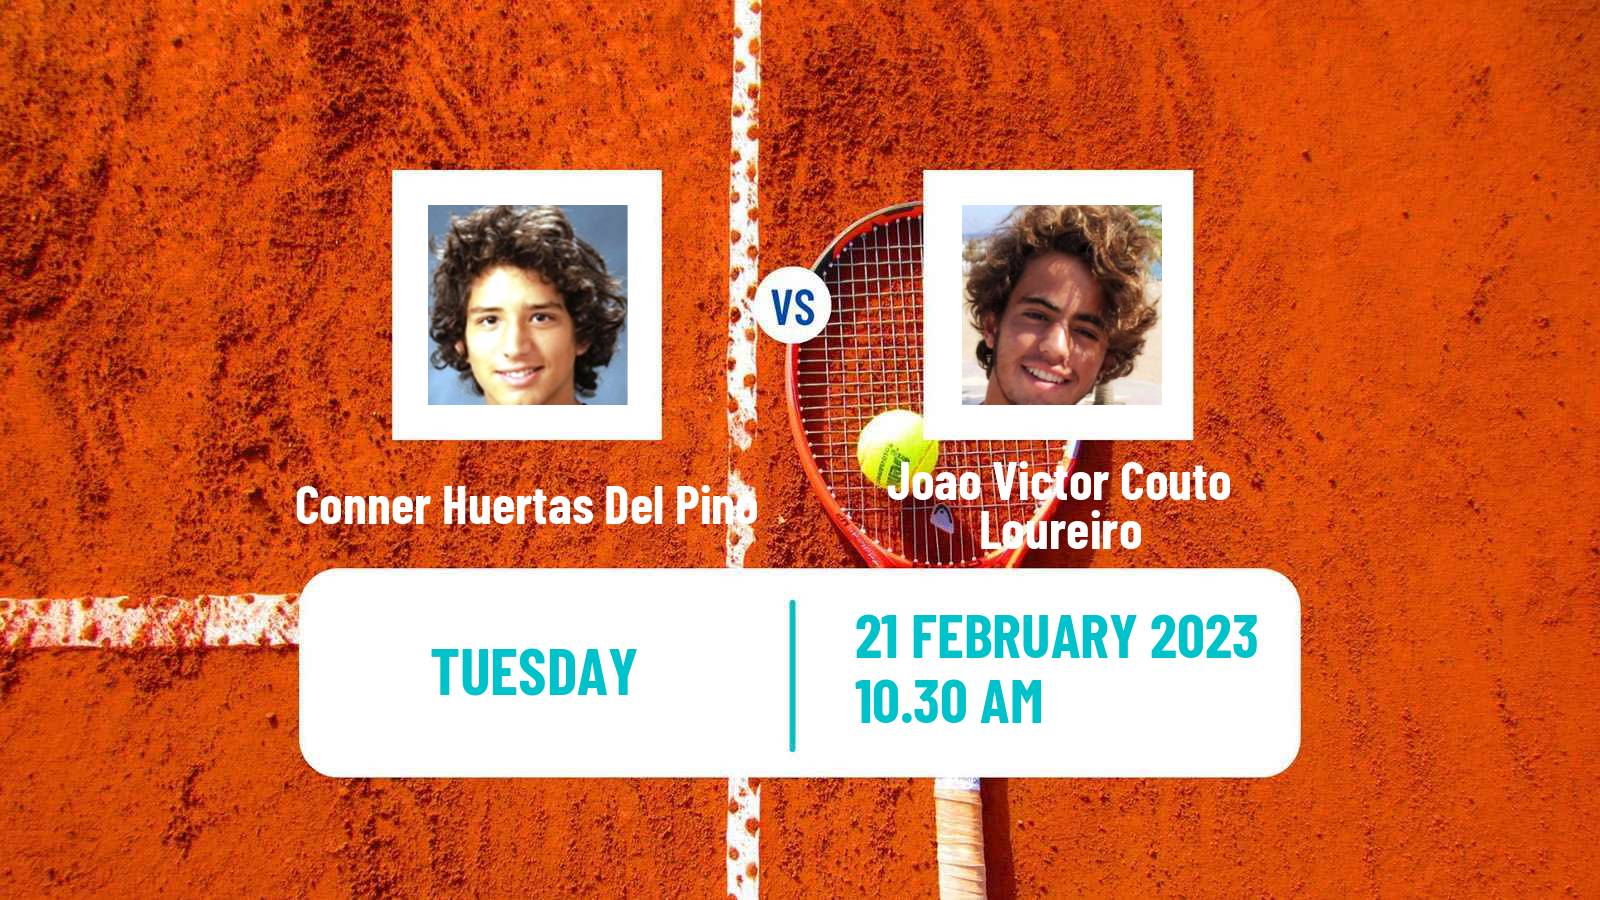 Tennis ITF Tournaments Conner Huertas Del Pino - Joao Victor Couto Loureiro